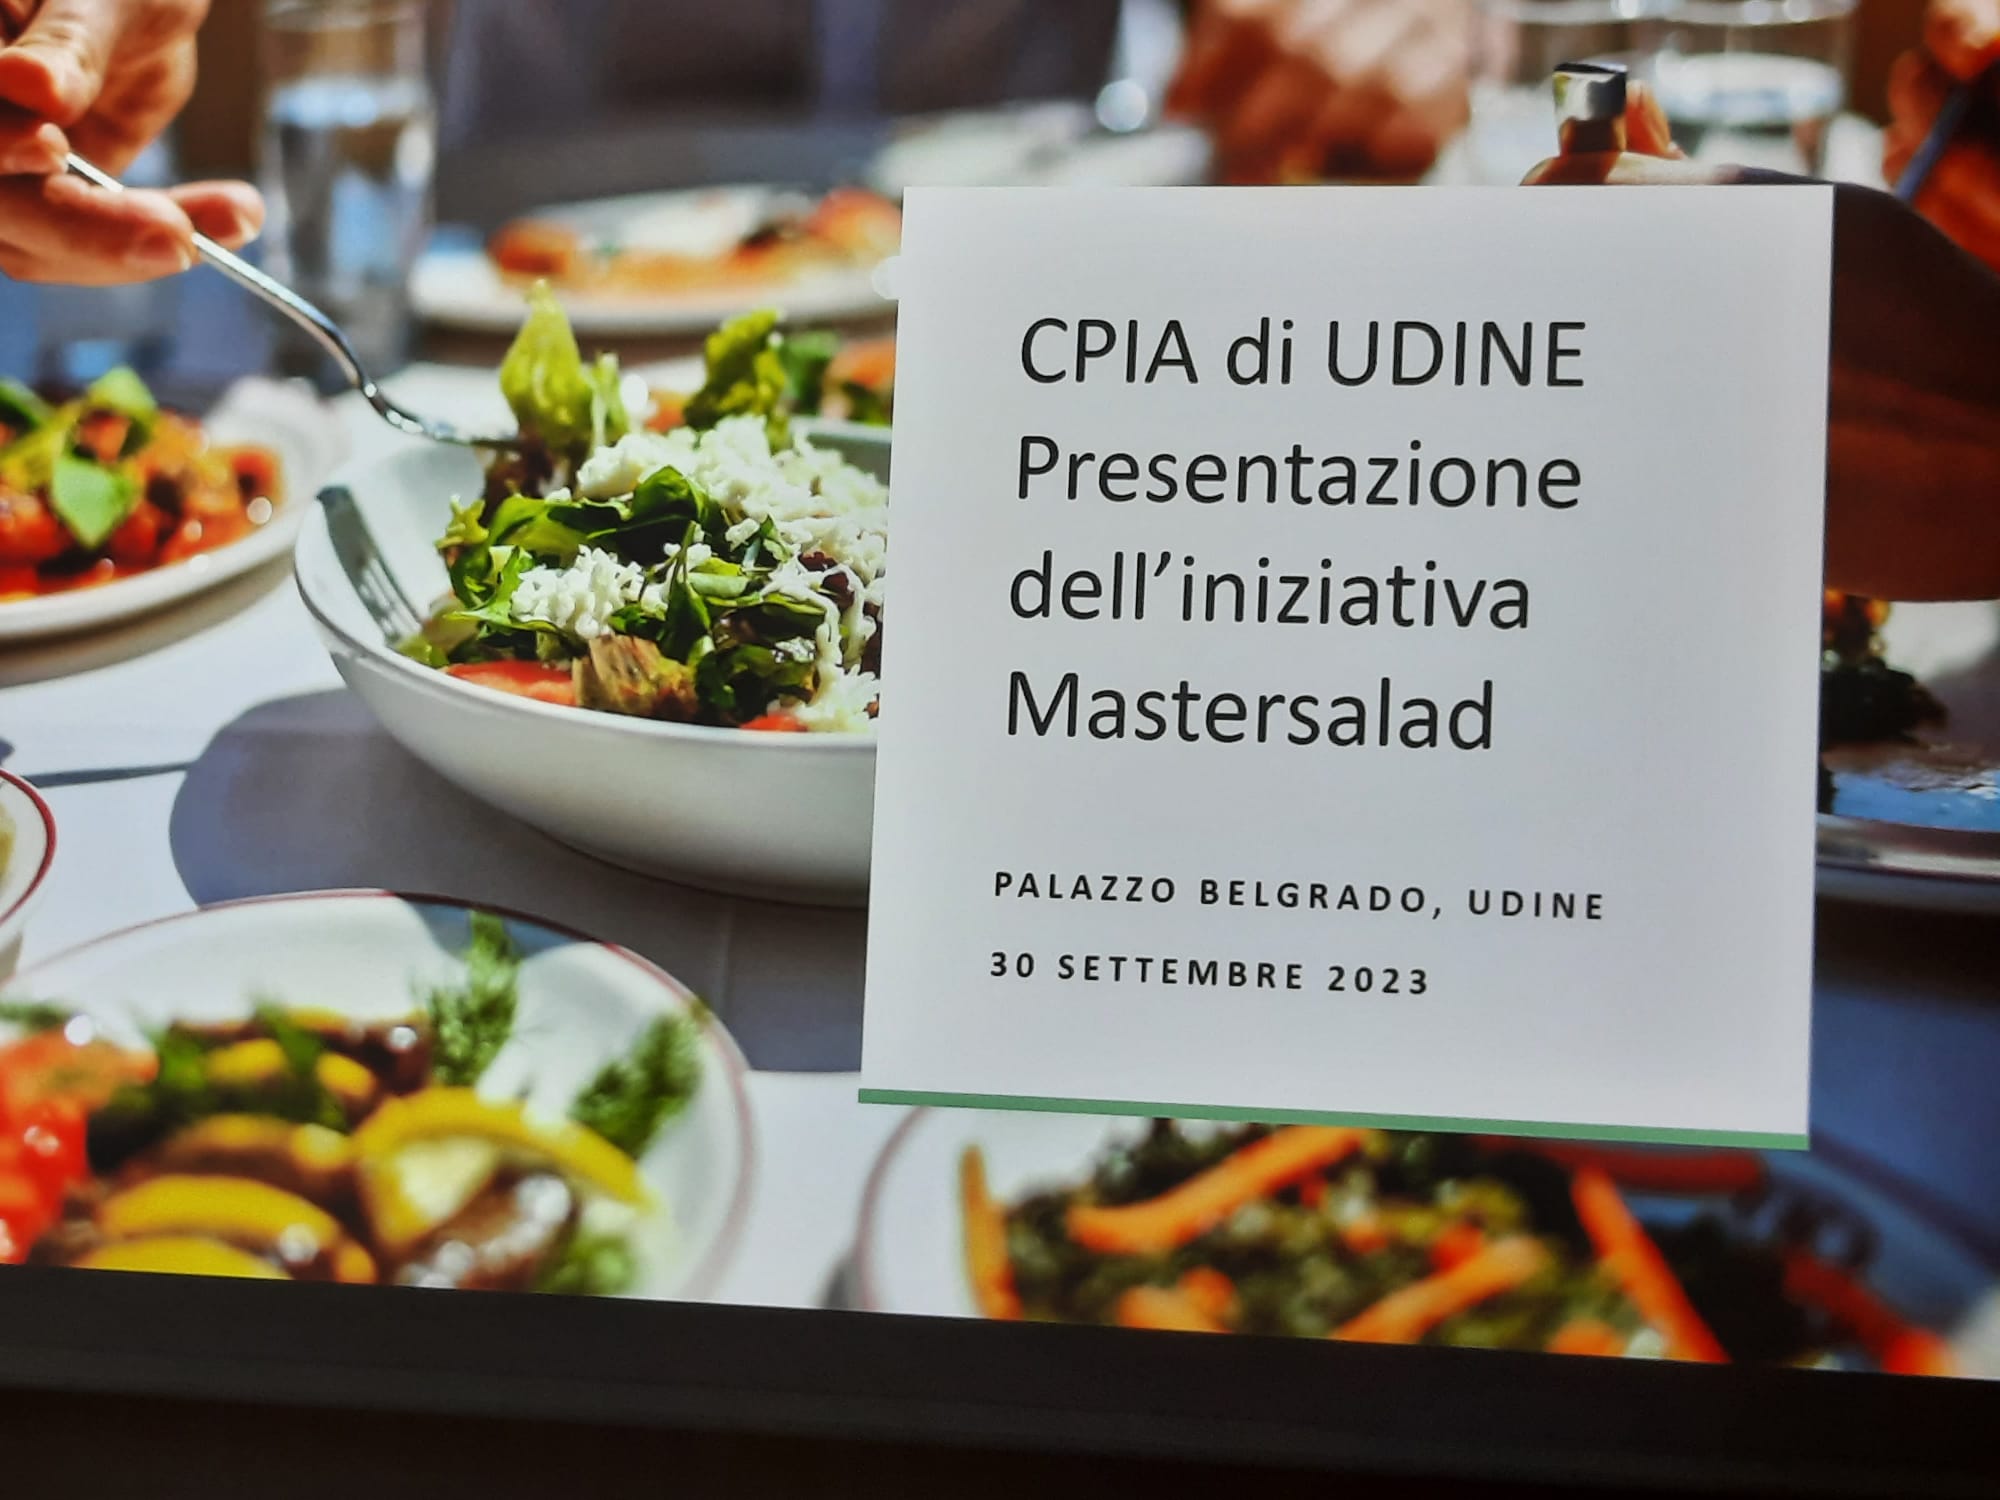 7 - CPIA di Udine - Presentazione dell'iniziativa Mastersalad